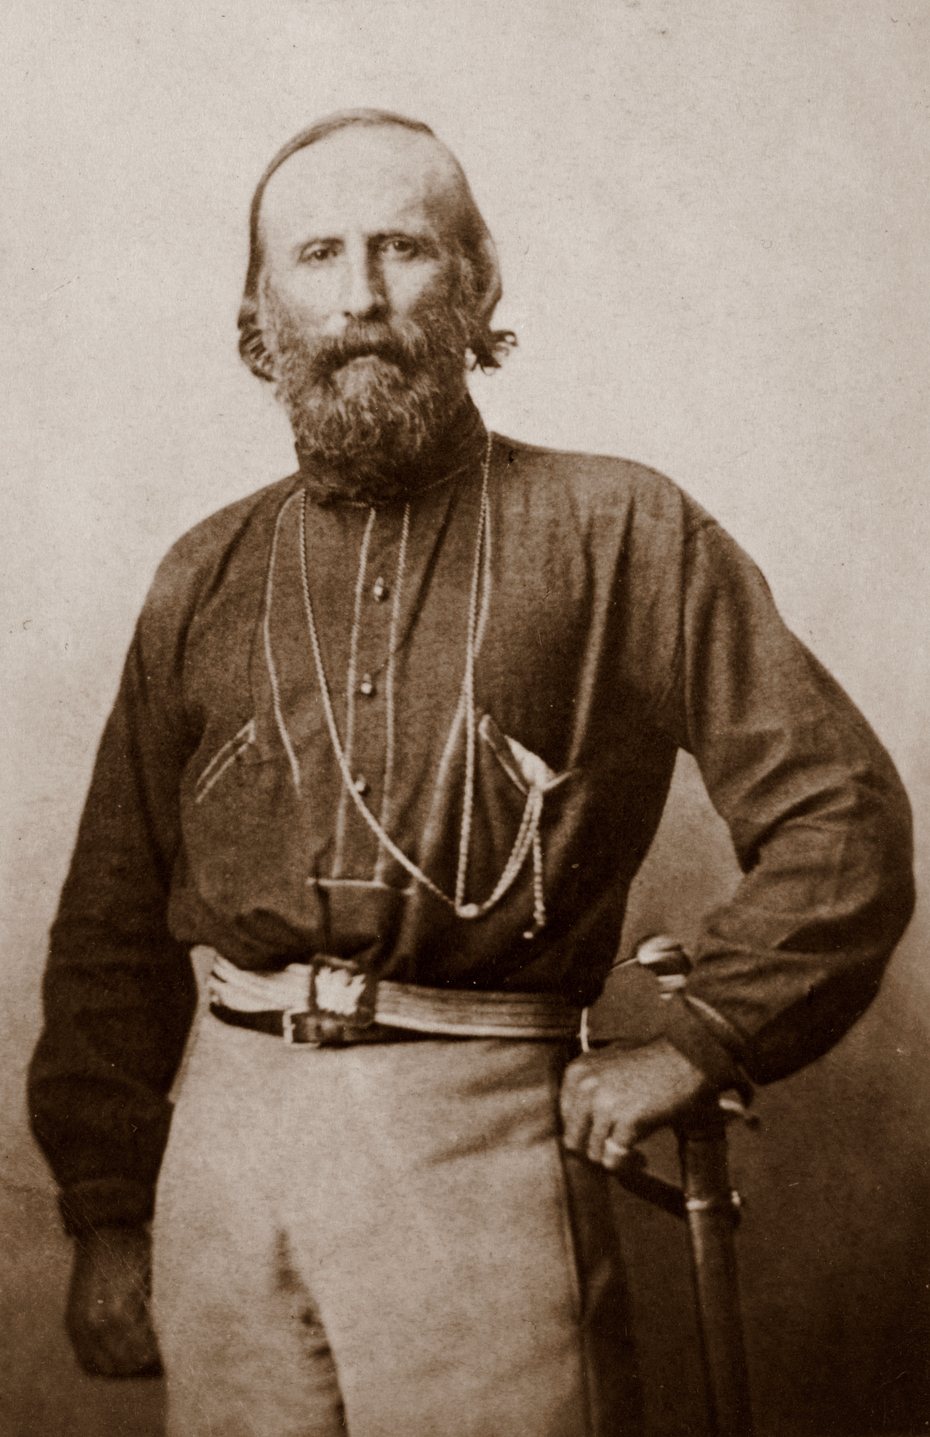 Porträt Giuseppe Garibaldis (1808-1882), einem Protagonisten der italienischen Einigungsbewegung zwischen 1820 und 1870